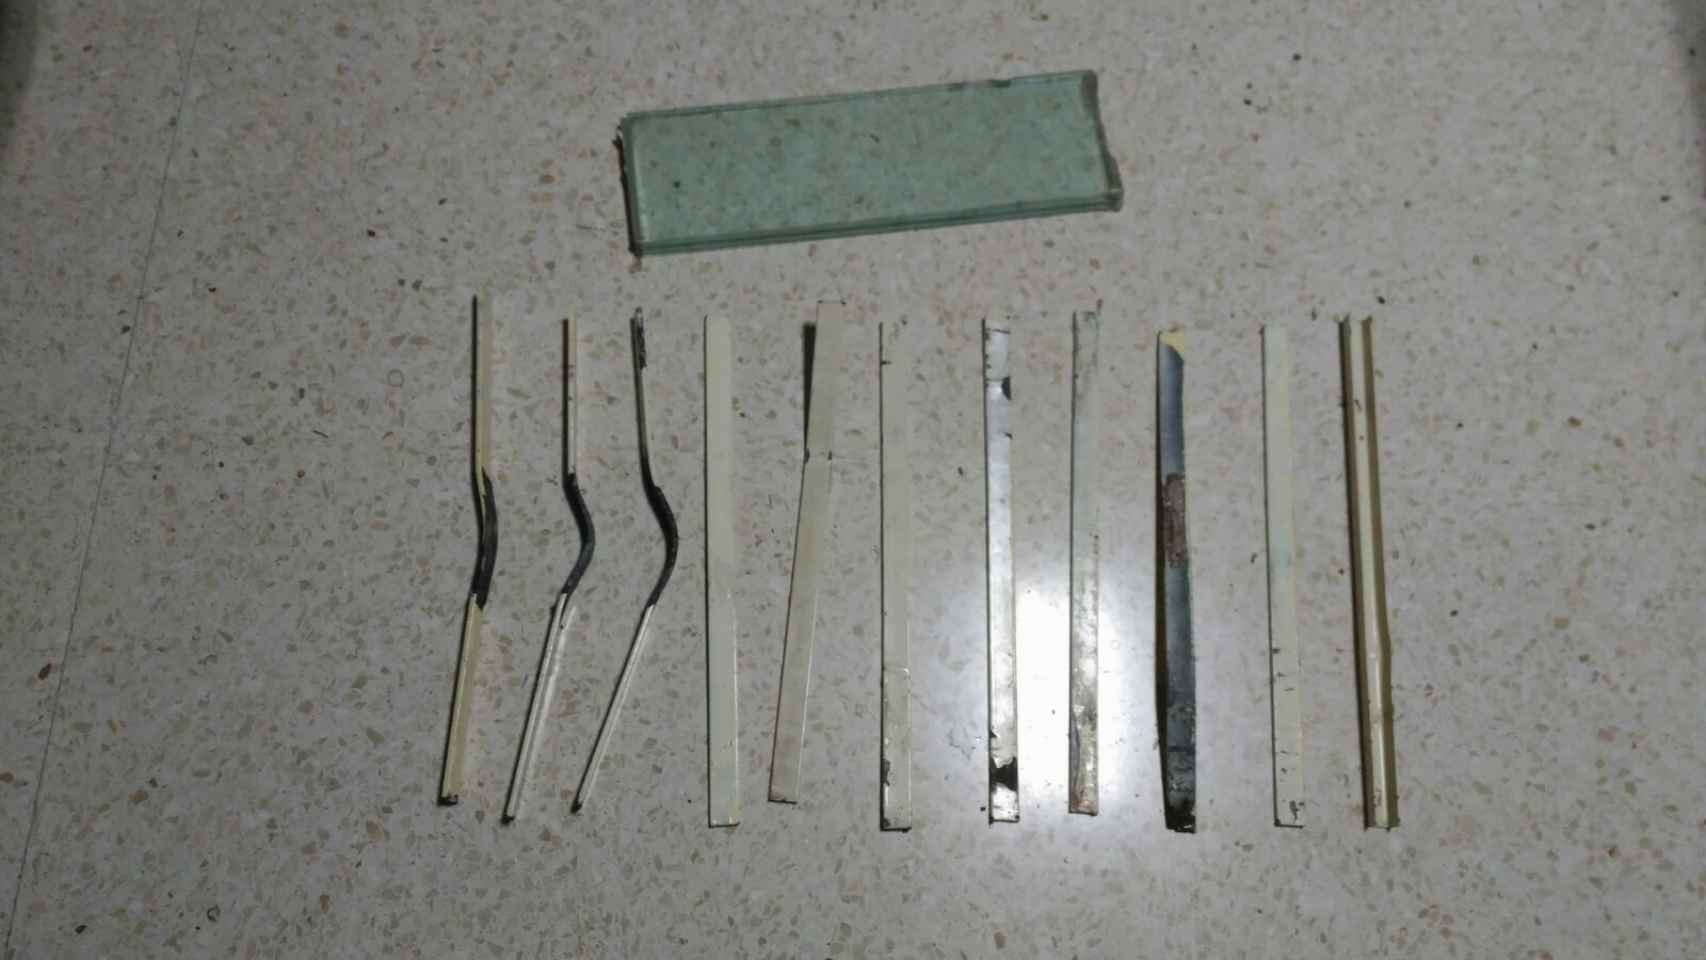 Objetos utilizados como arma por los internos.